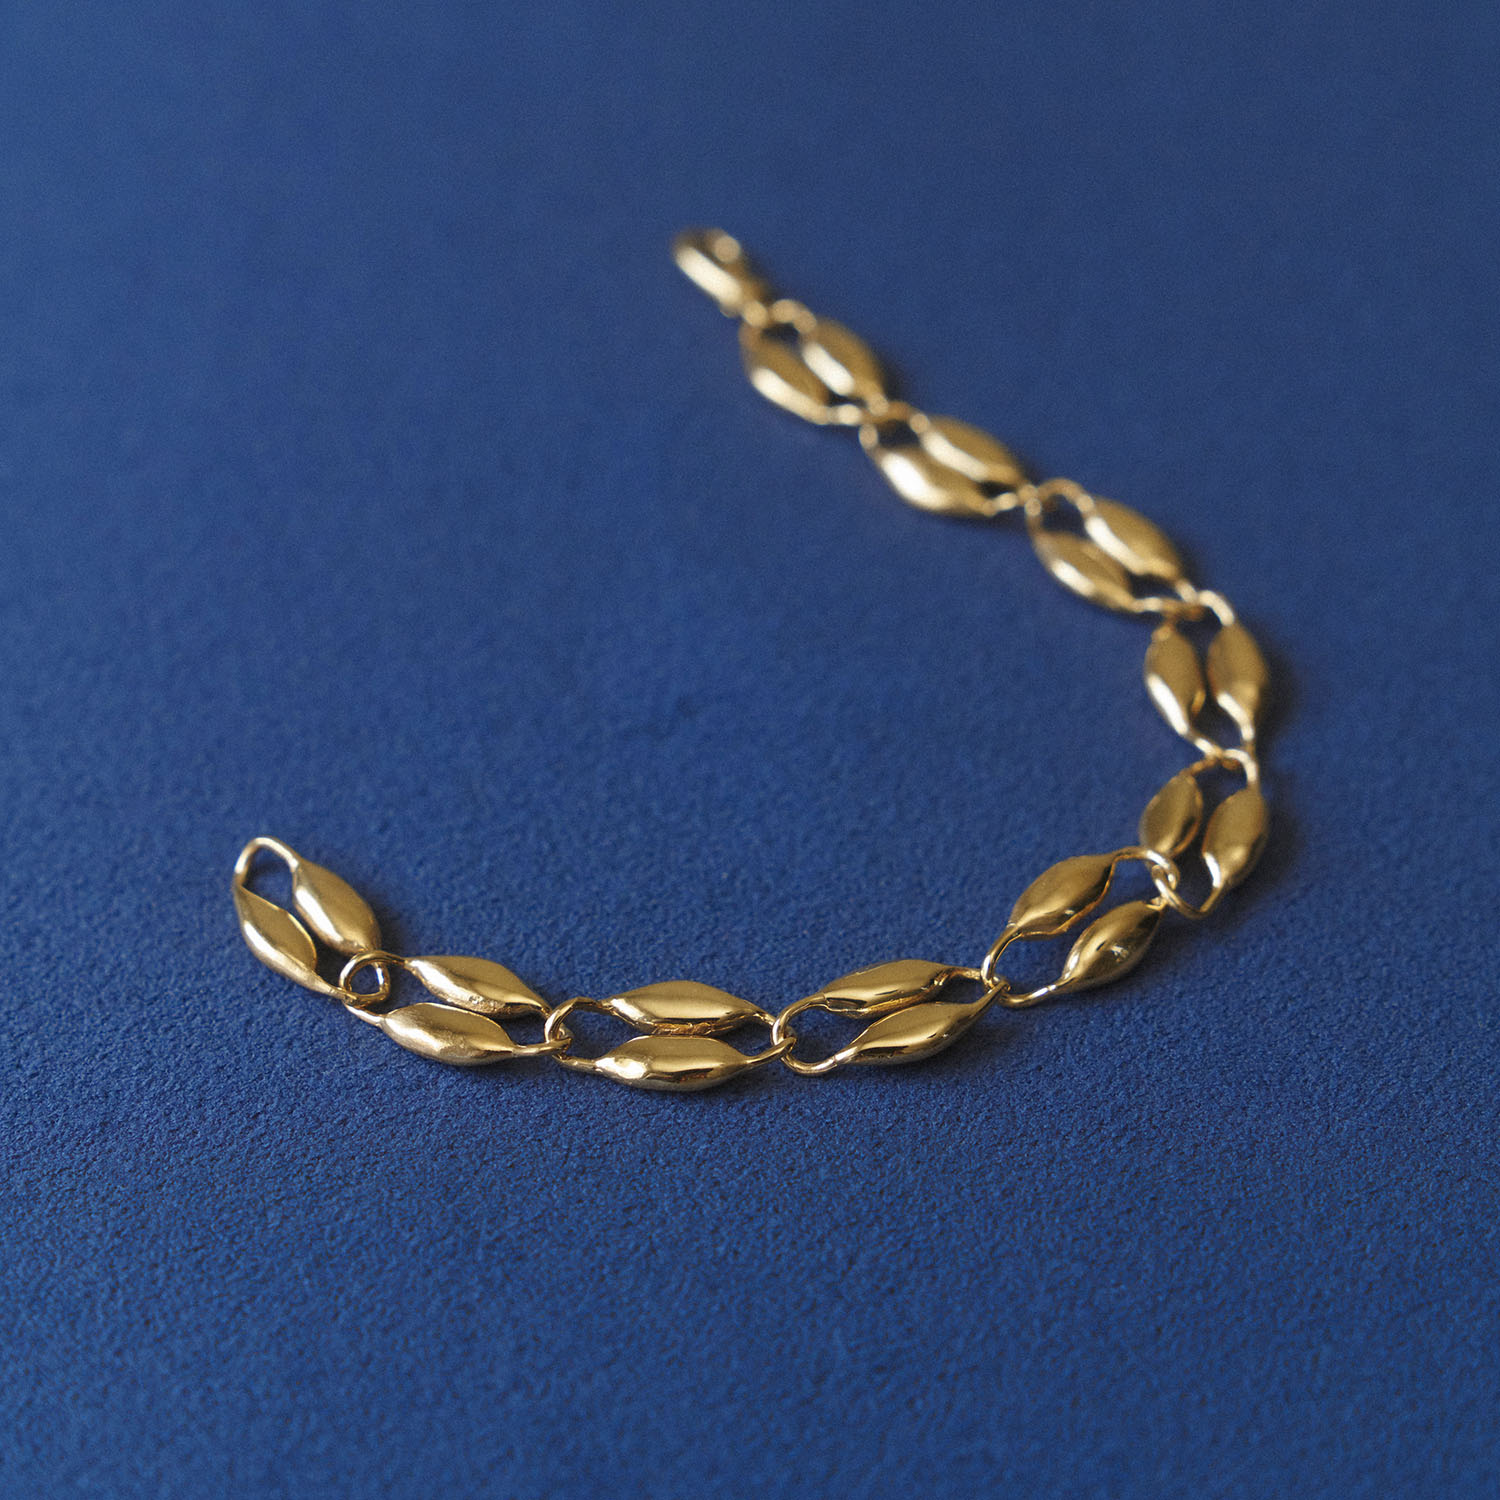 Pole chain bracelet